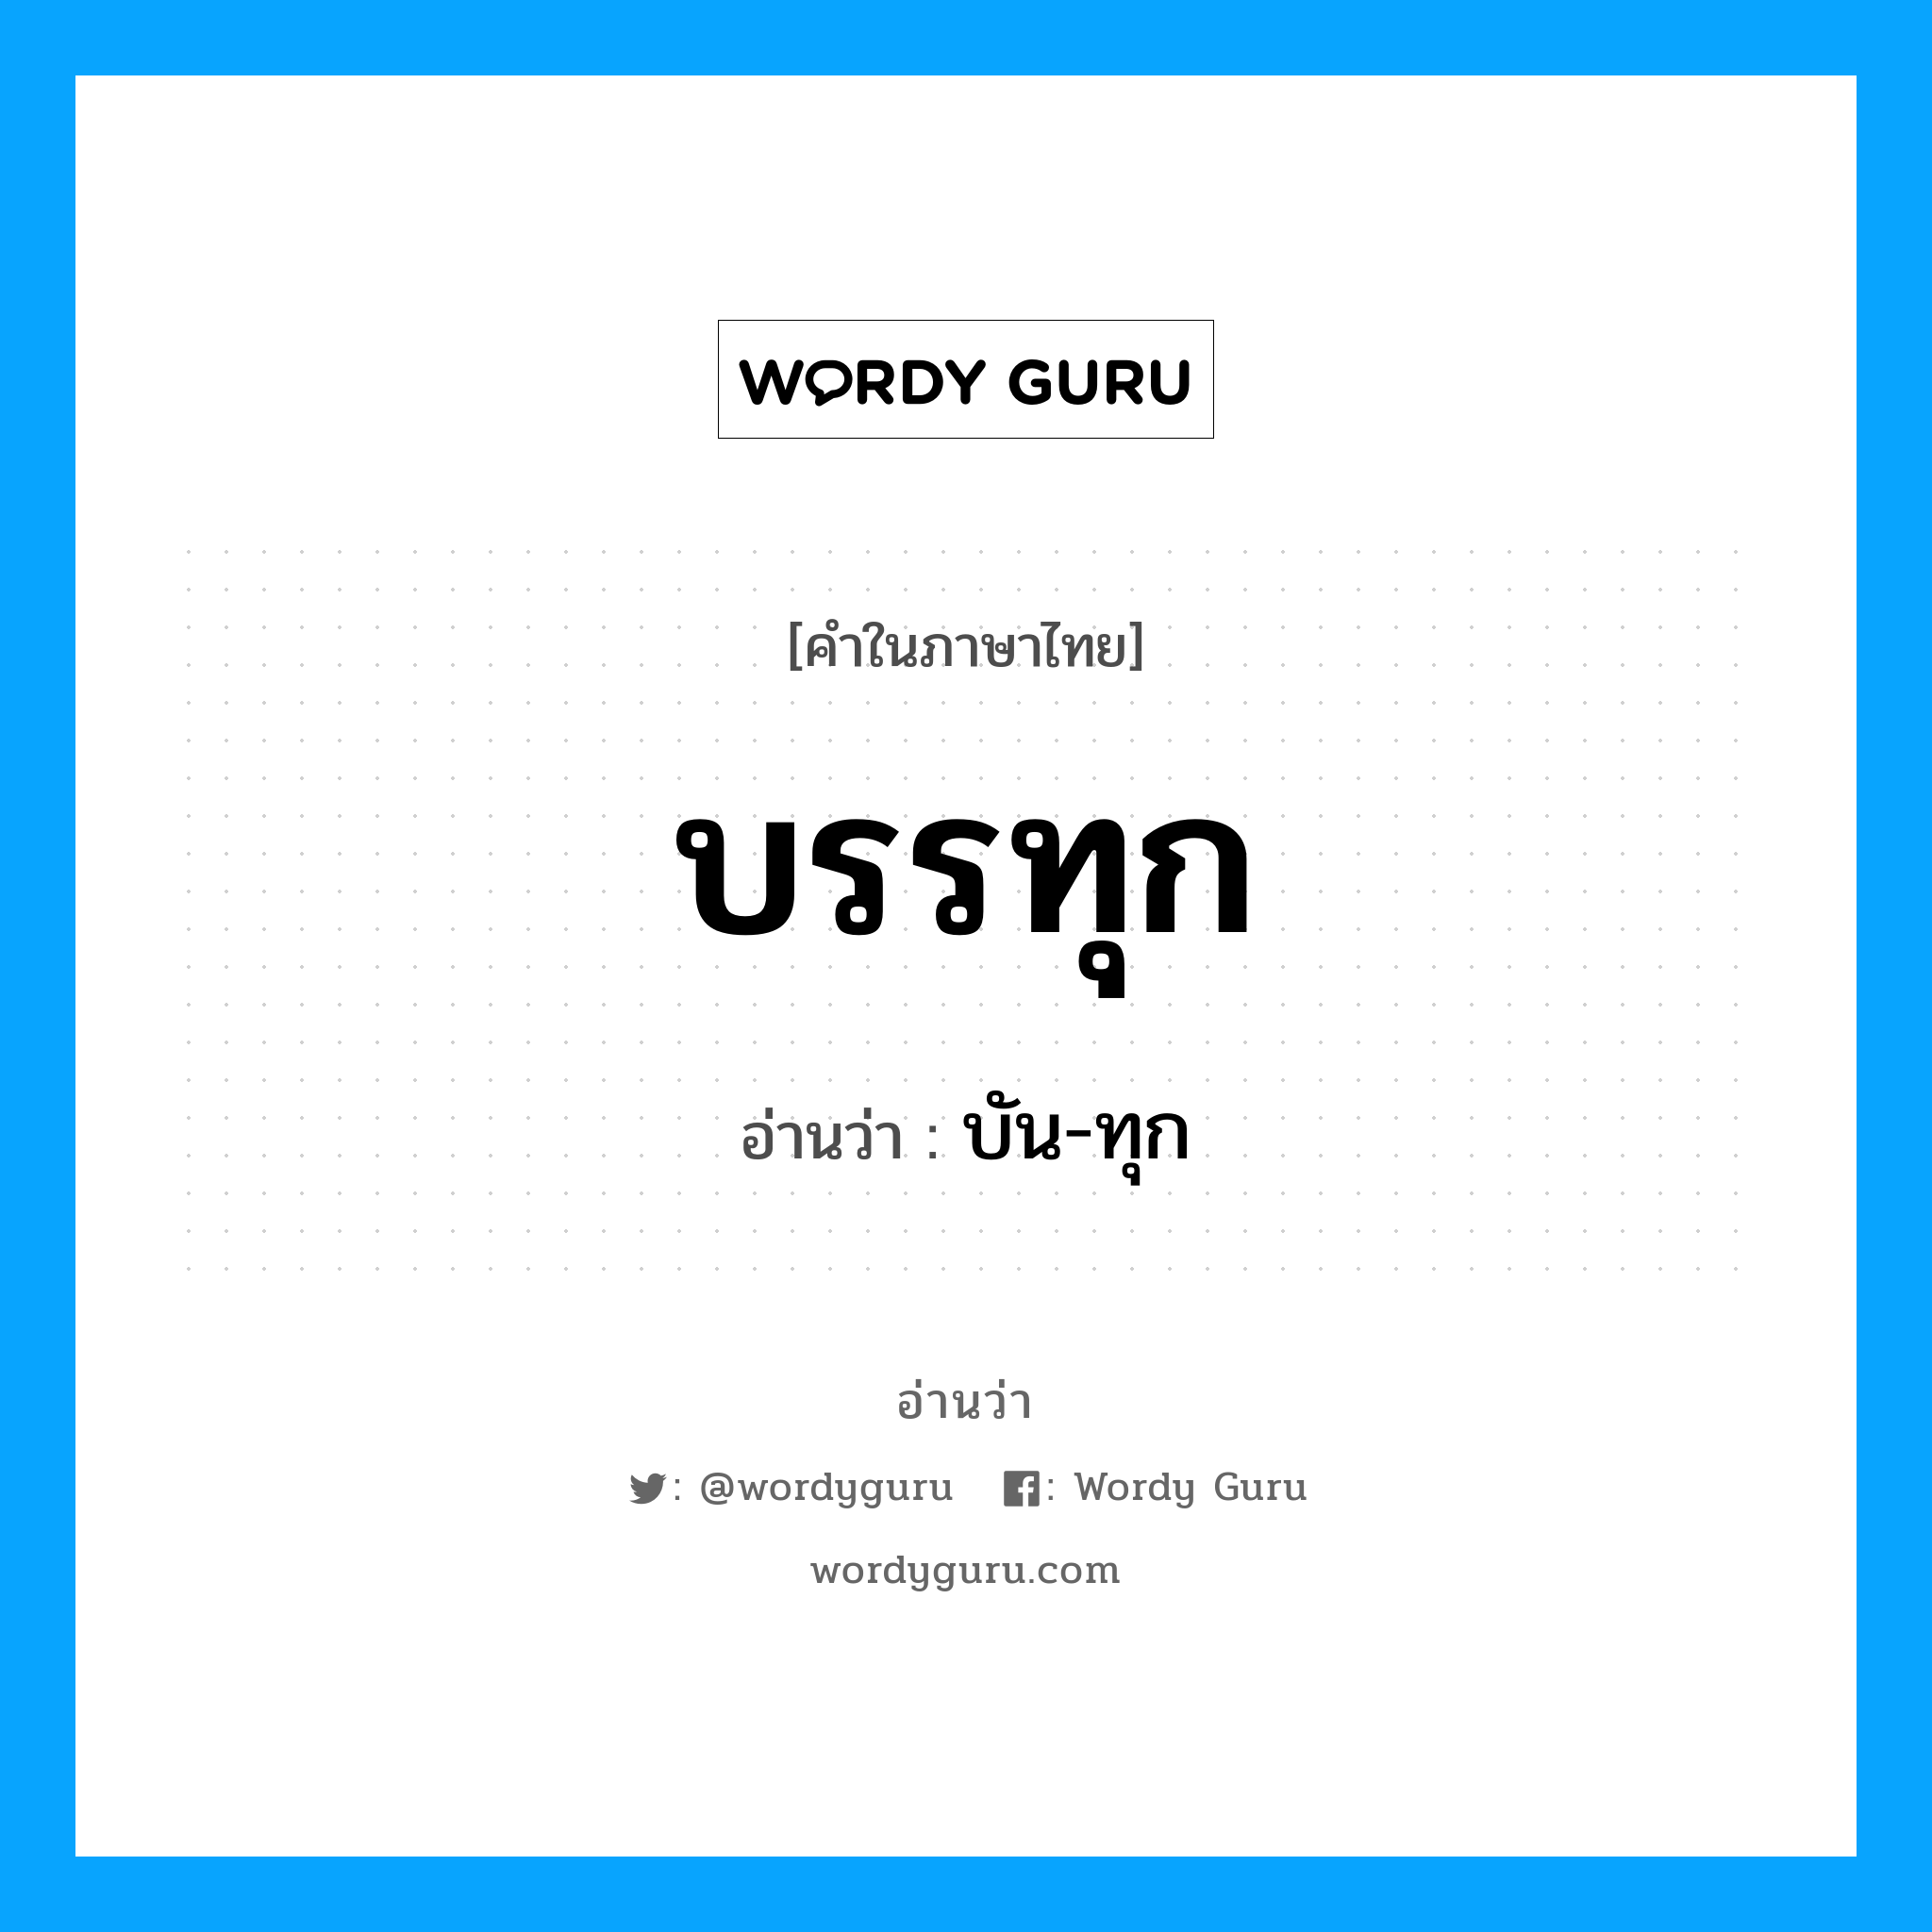 บัน-ทุก เป็นคำอ่านของคำไหน?, คำในภาษาไทย บัน-ทุก อ่านว่า บรรทุก